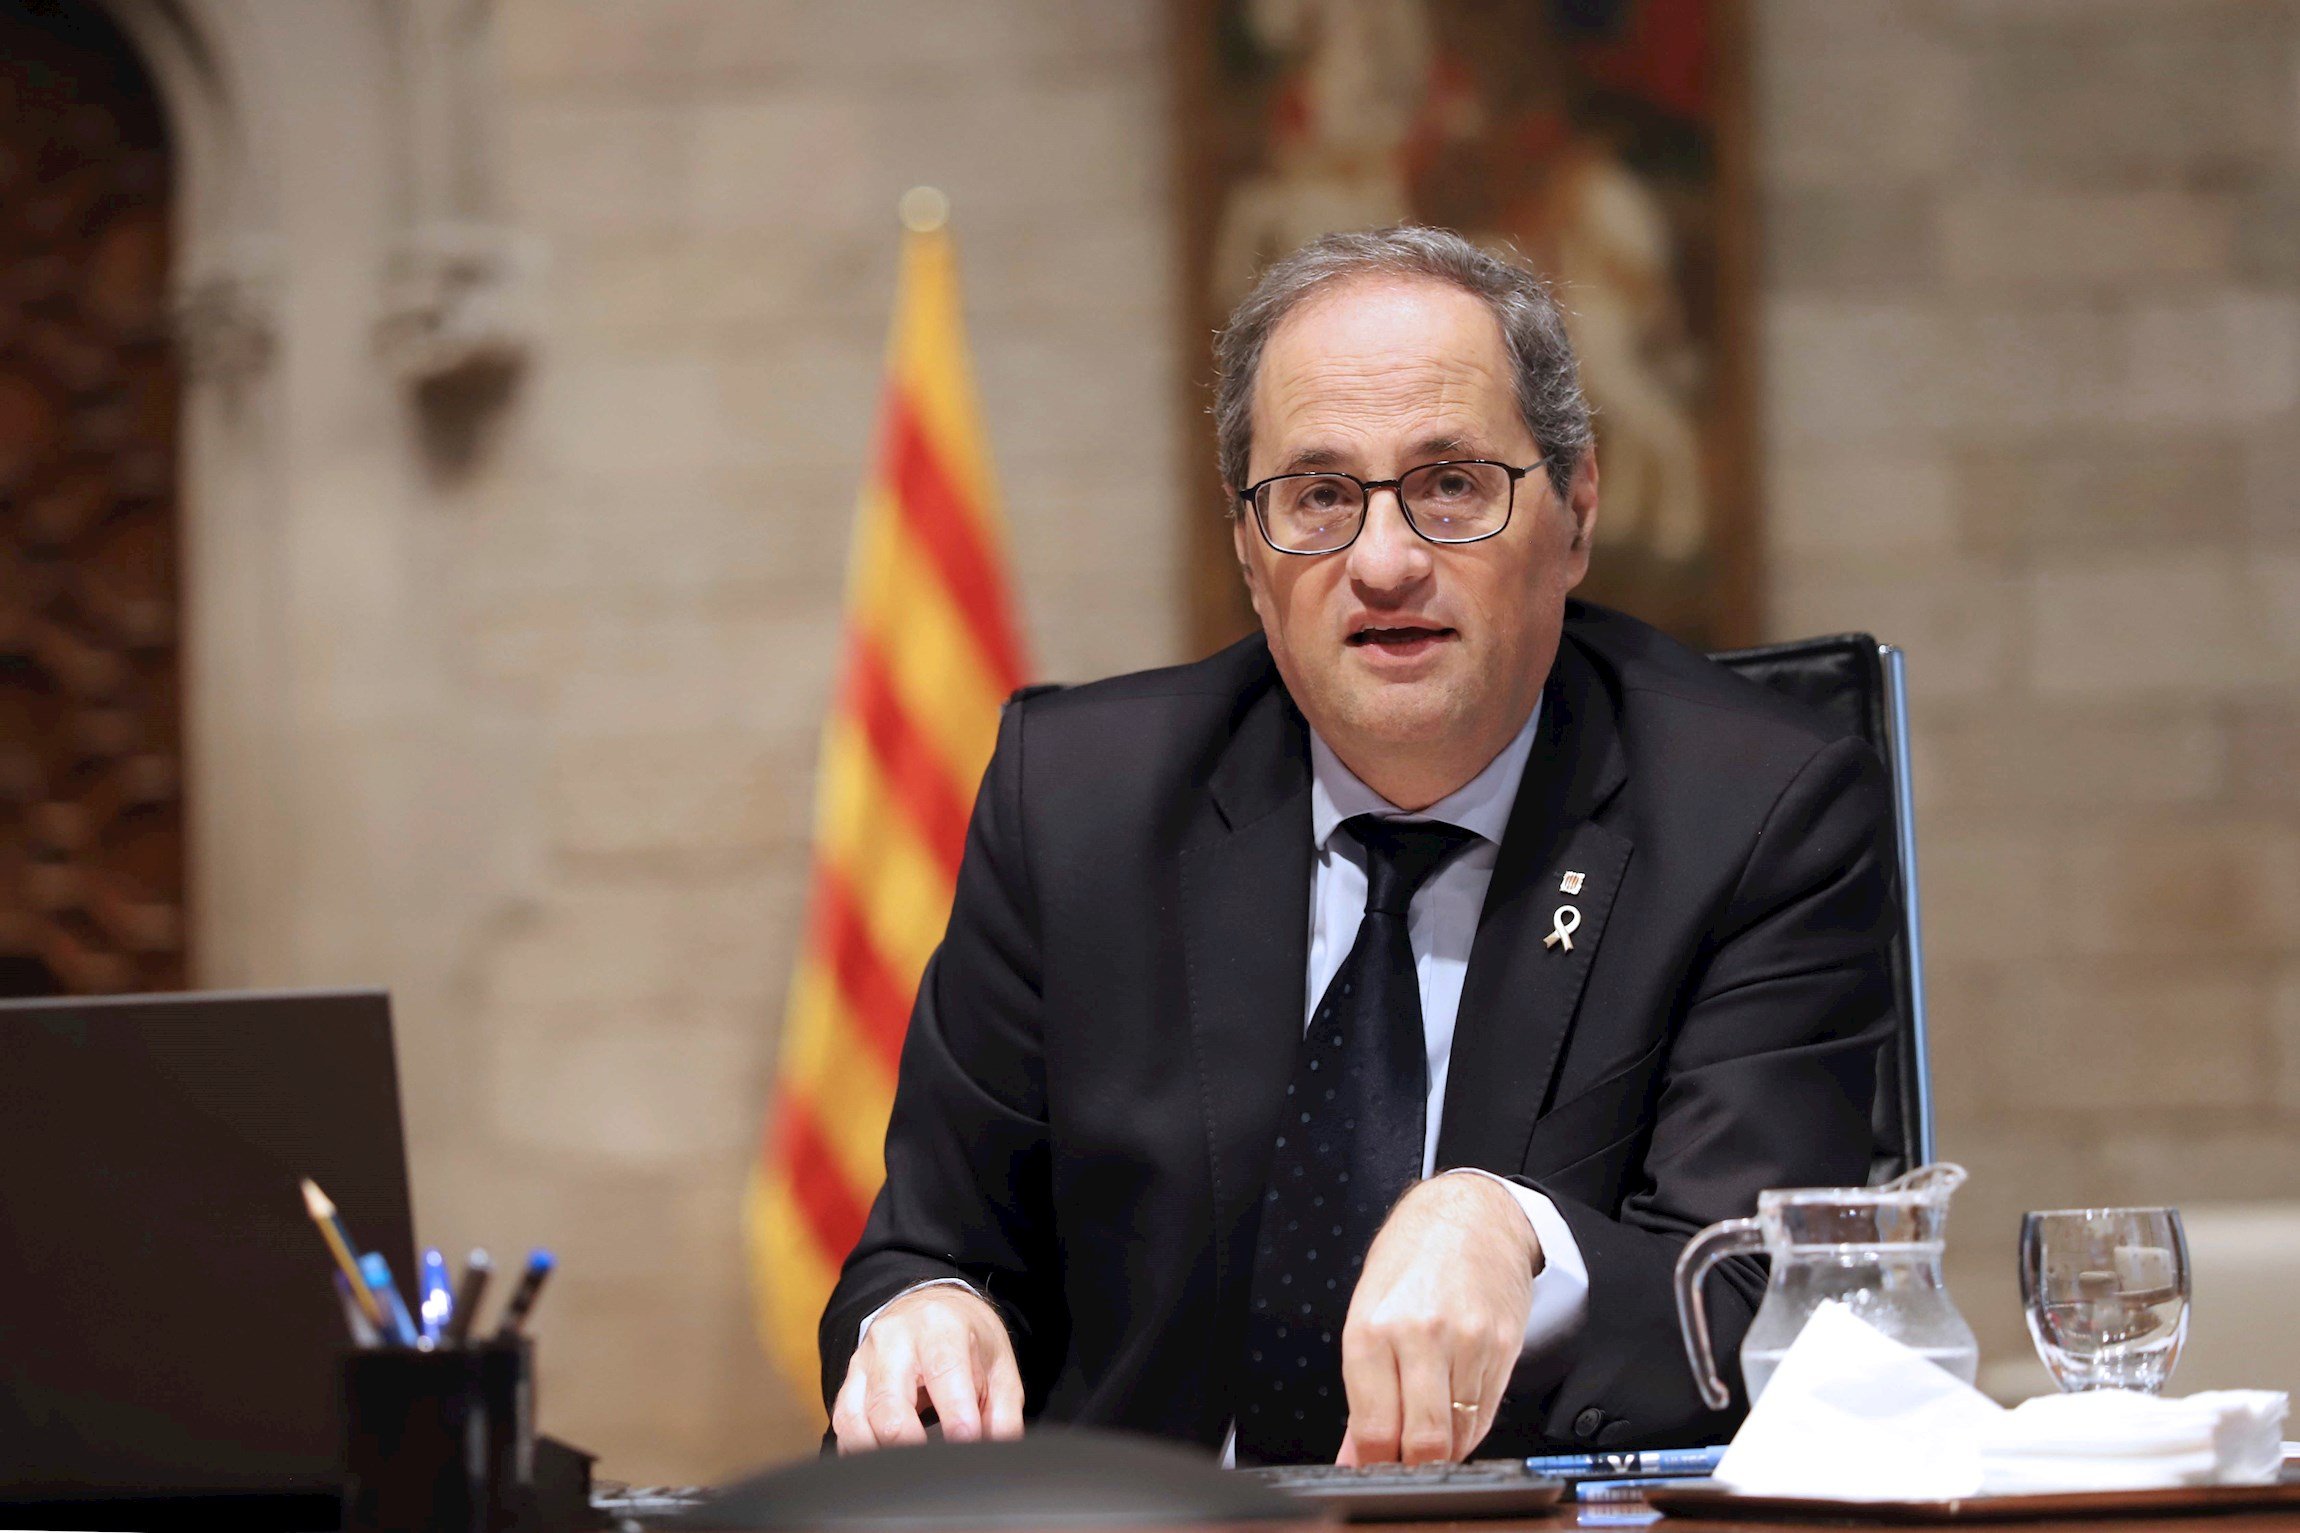 Torra pressiona Sánchez amb milers d'ERTO impagats a catalans: "Reclamarem"